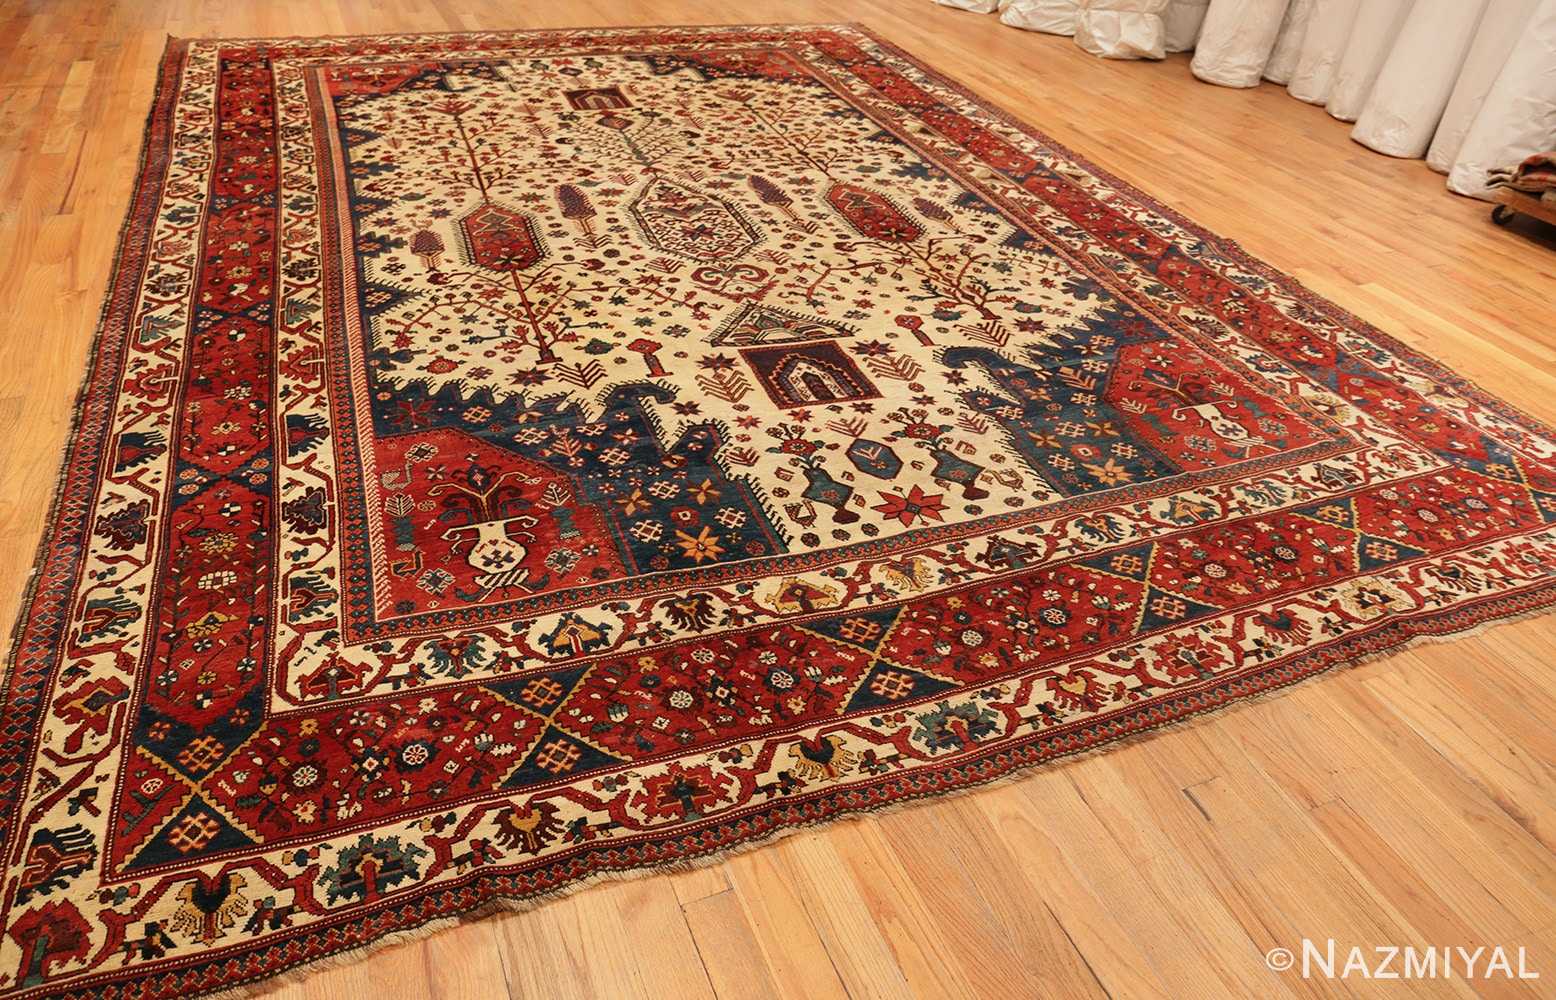 Full Antique Persian Bakhtiari rug 70237 by Nazmiyal